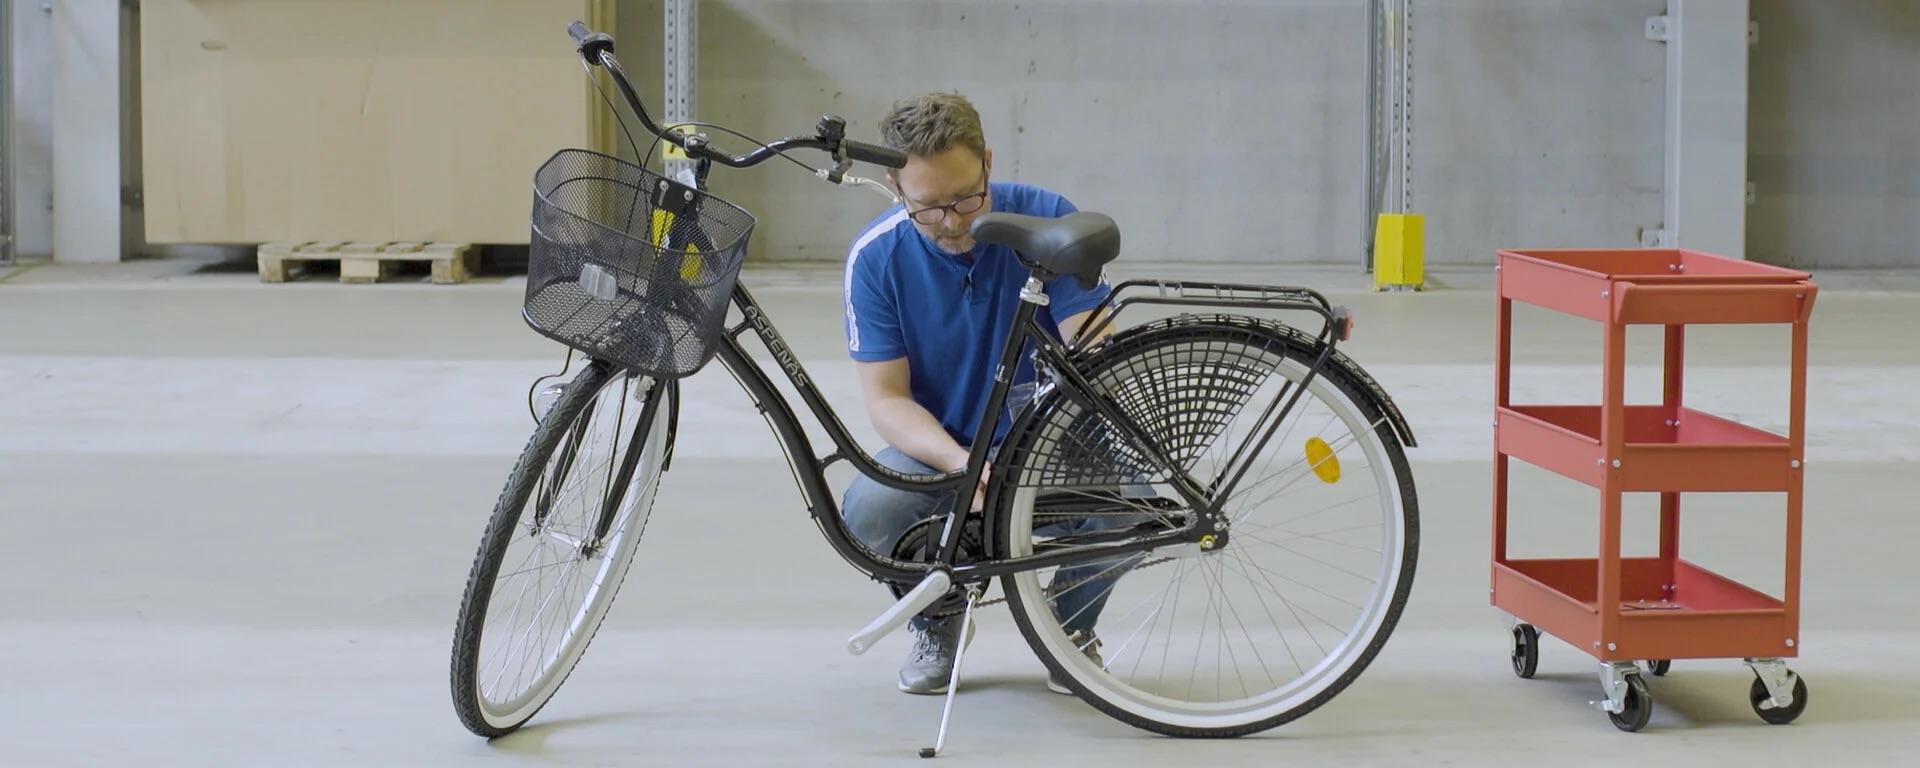 Kille från Intersport som monterar cykel